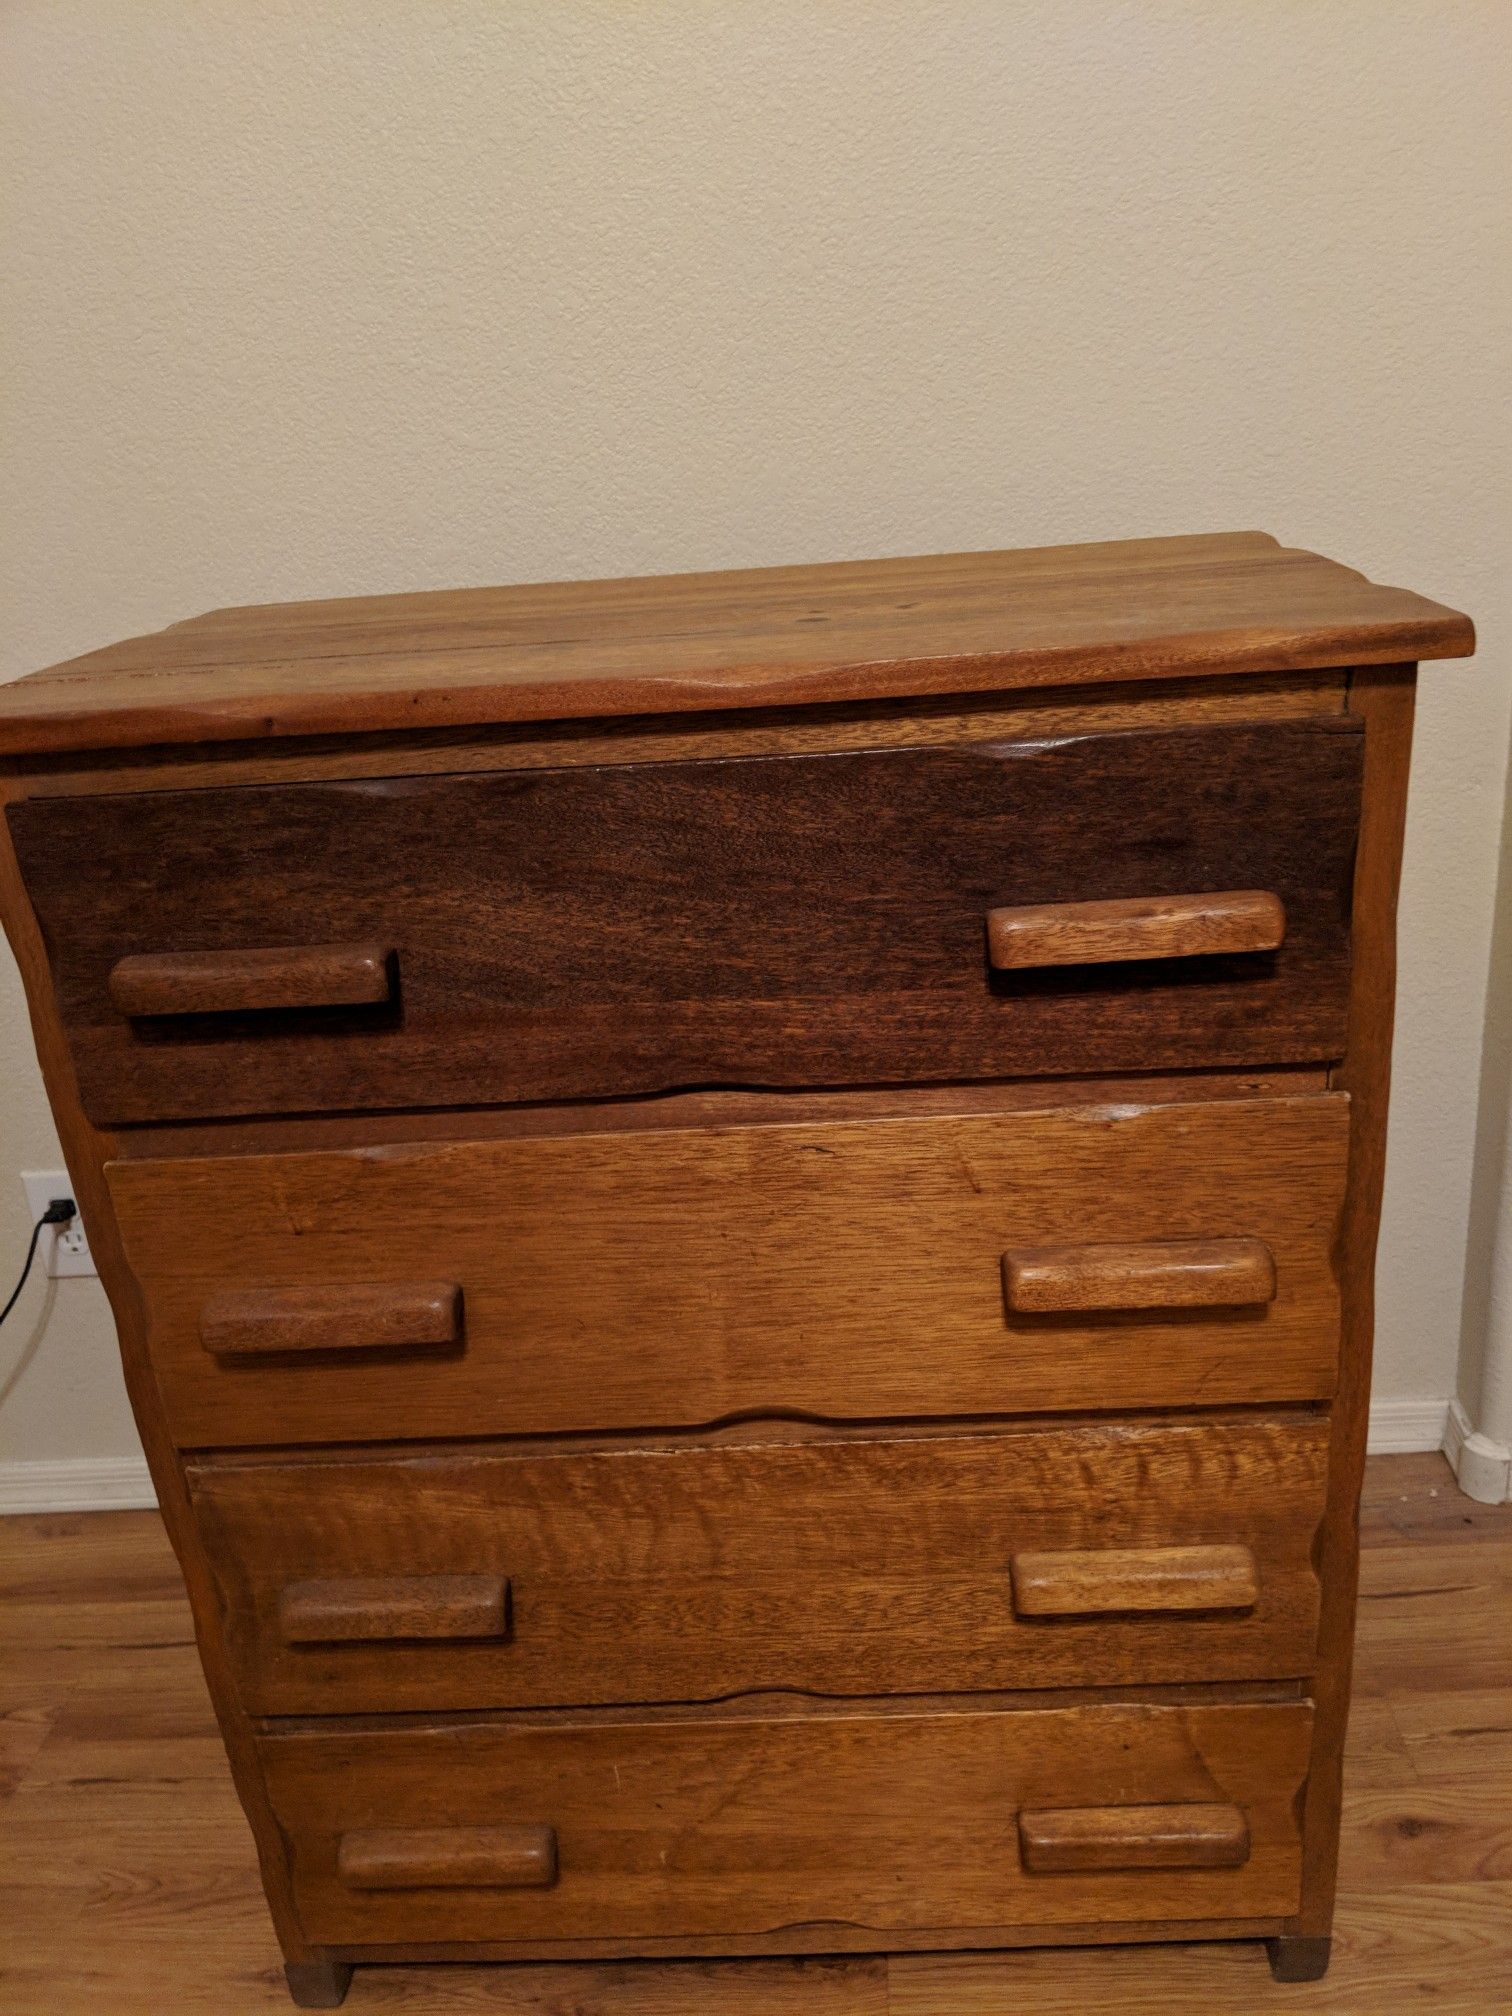 Very old dresser